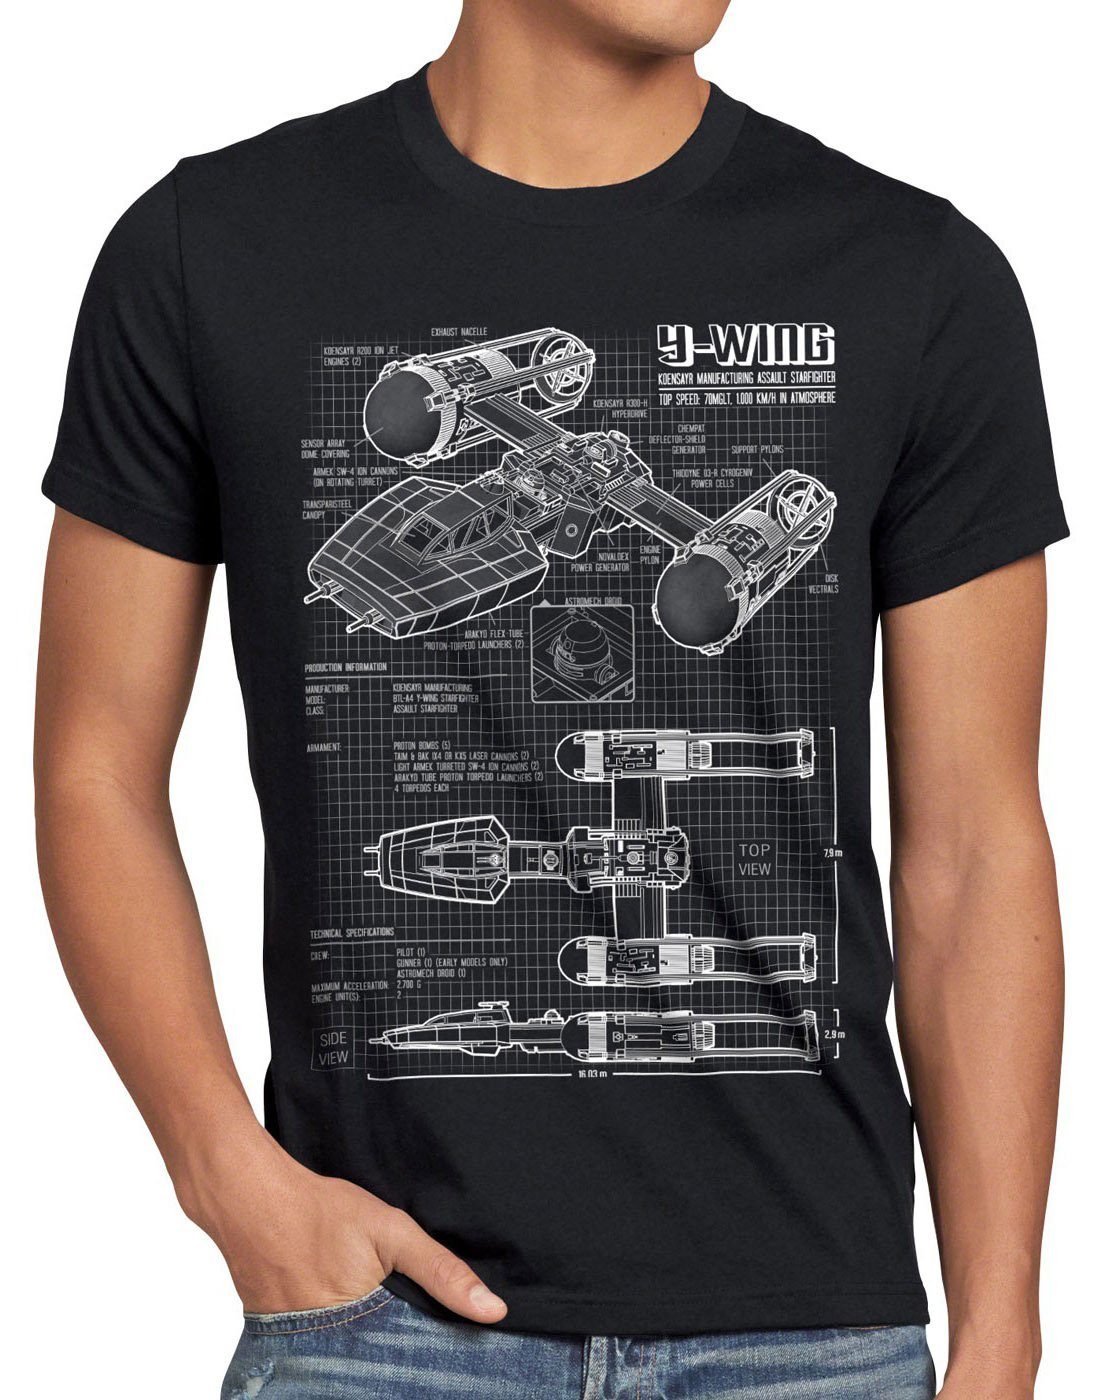 Herren rebellion Print-Shirt T-Shirt x-wing wars star schwarz der style3 krieg battlefront sterne Y-Wing